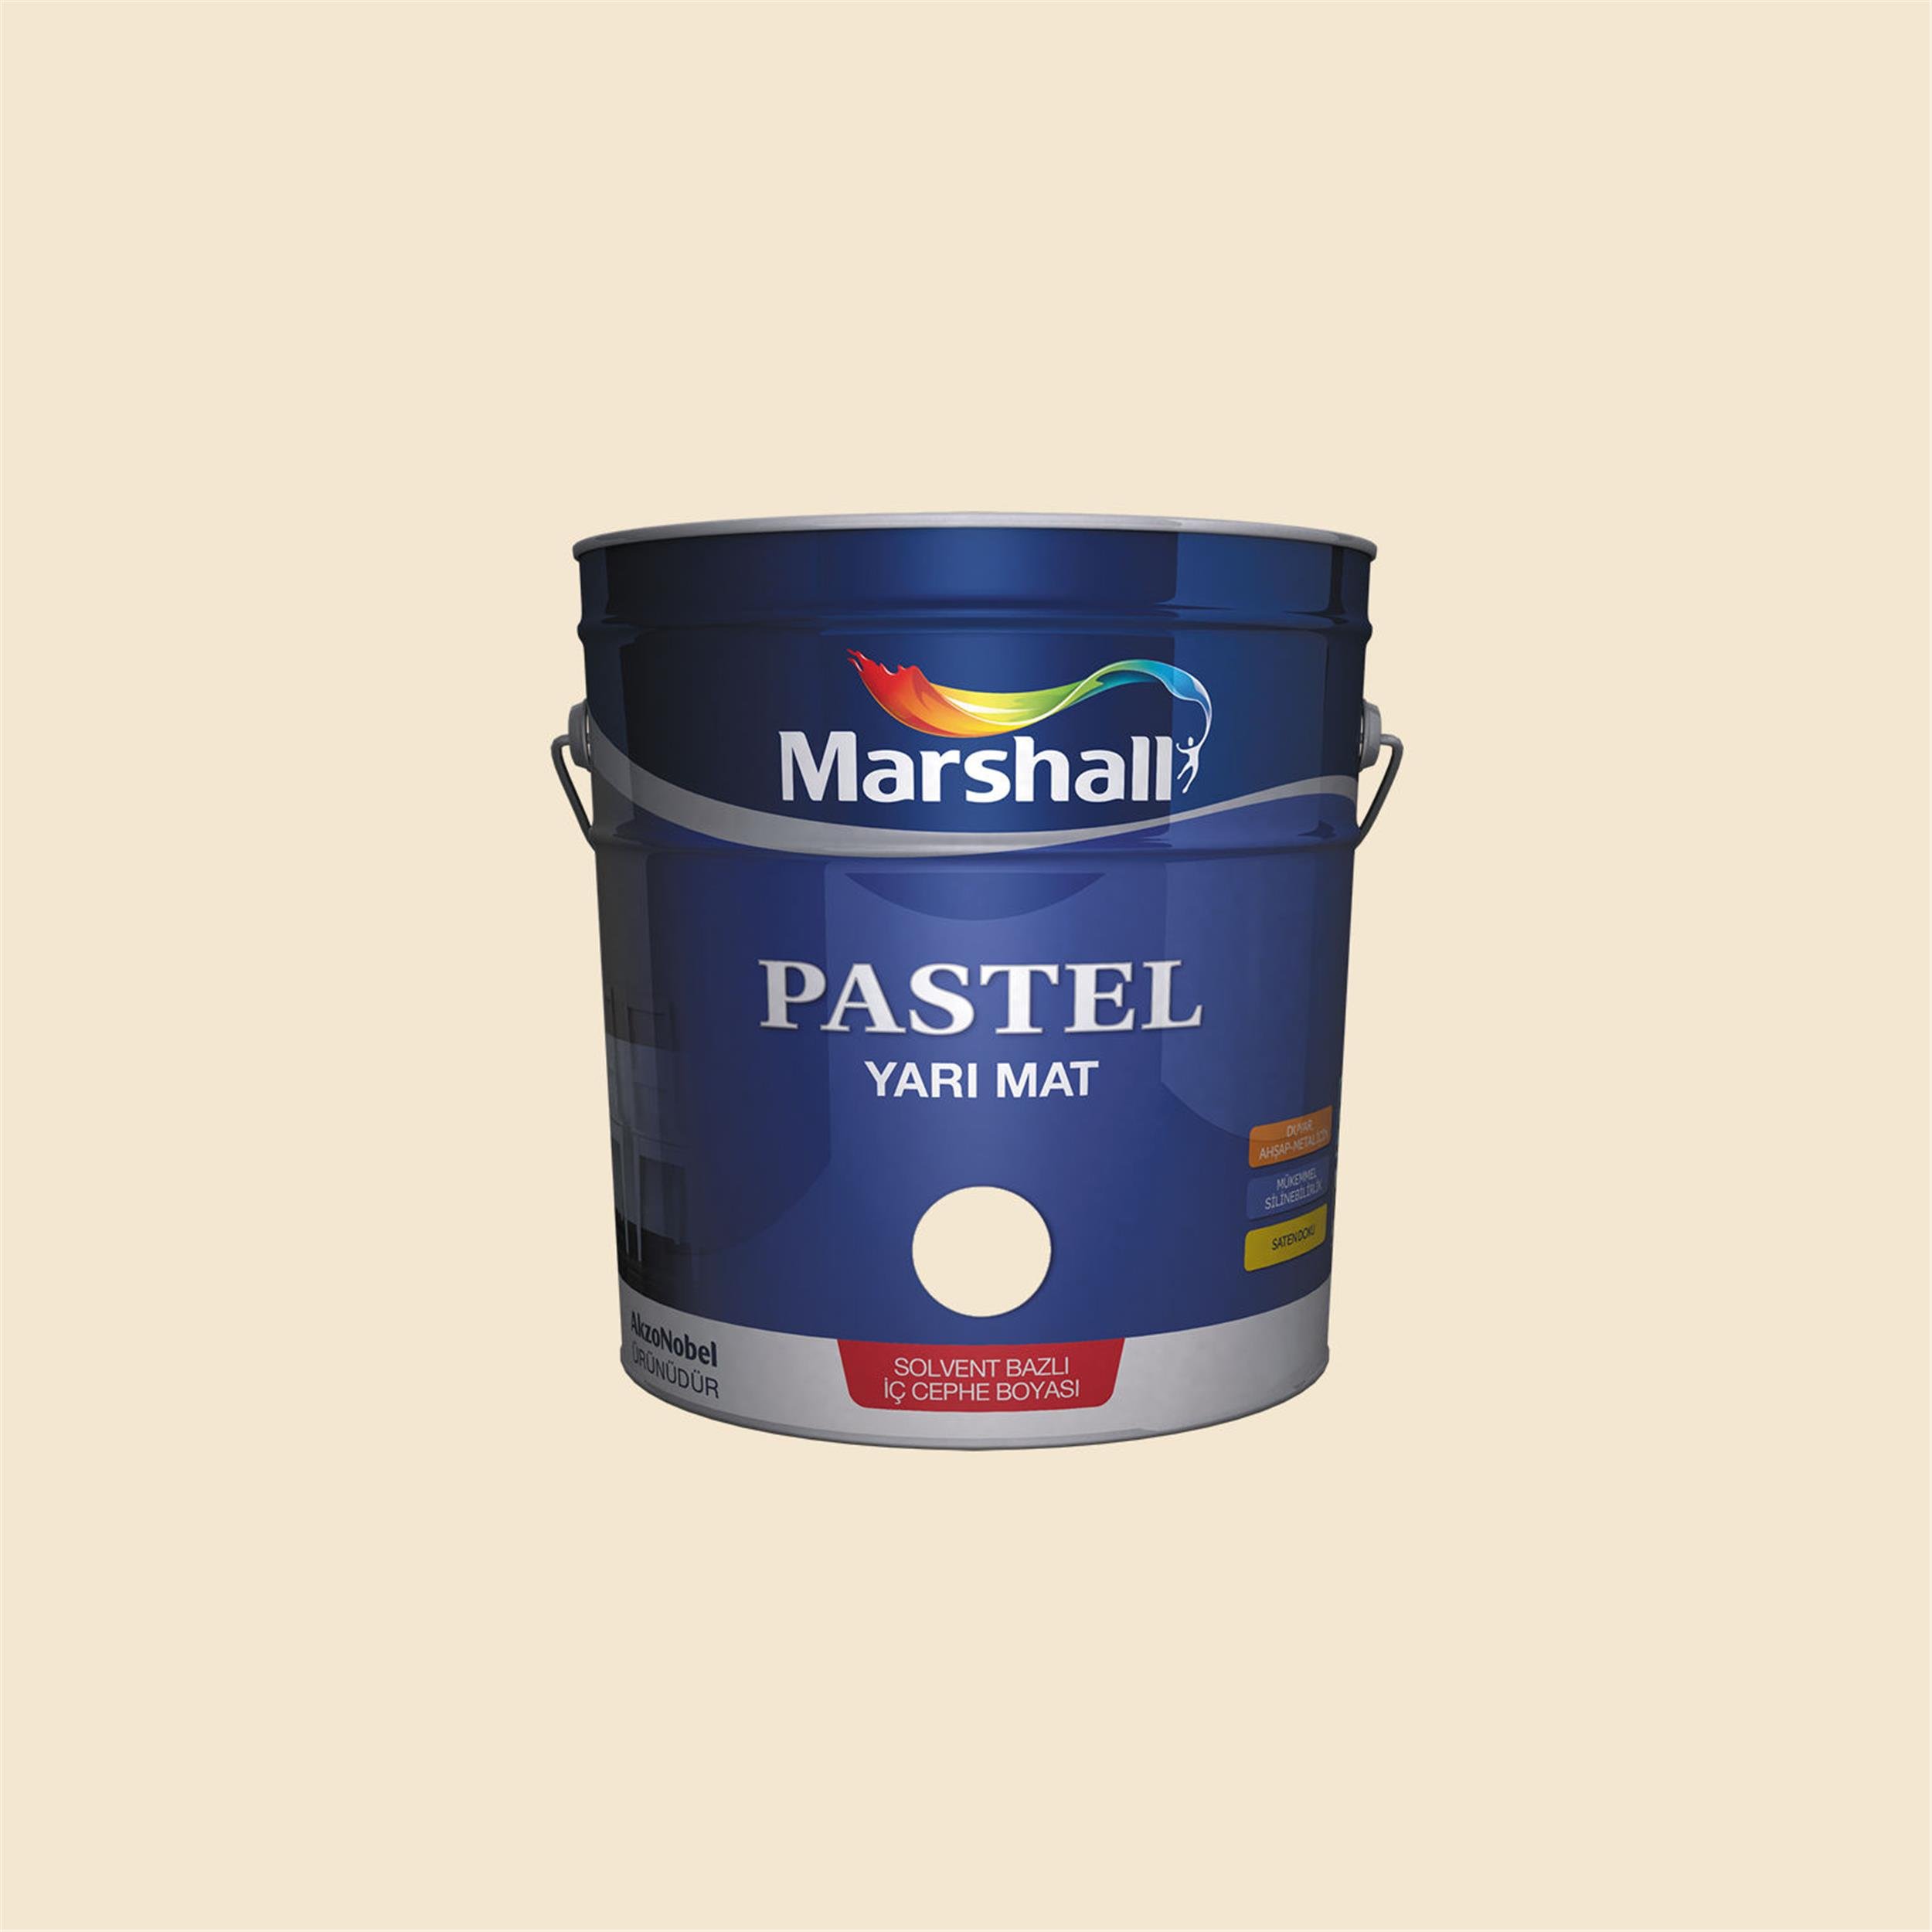 Marshall Mum Işığı 1 Litre Pastel Yarı Mat Solvent Bazlı İç Cephe Boyası  (MARSHALL.5598997) | Afeks Yapı Market